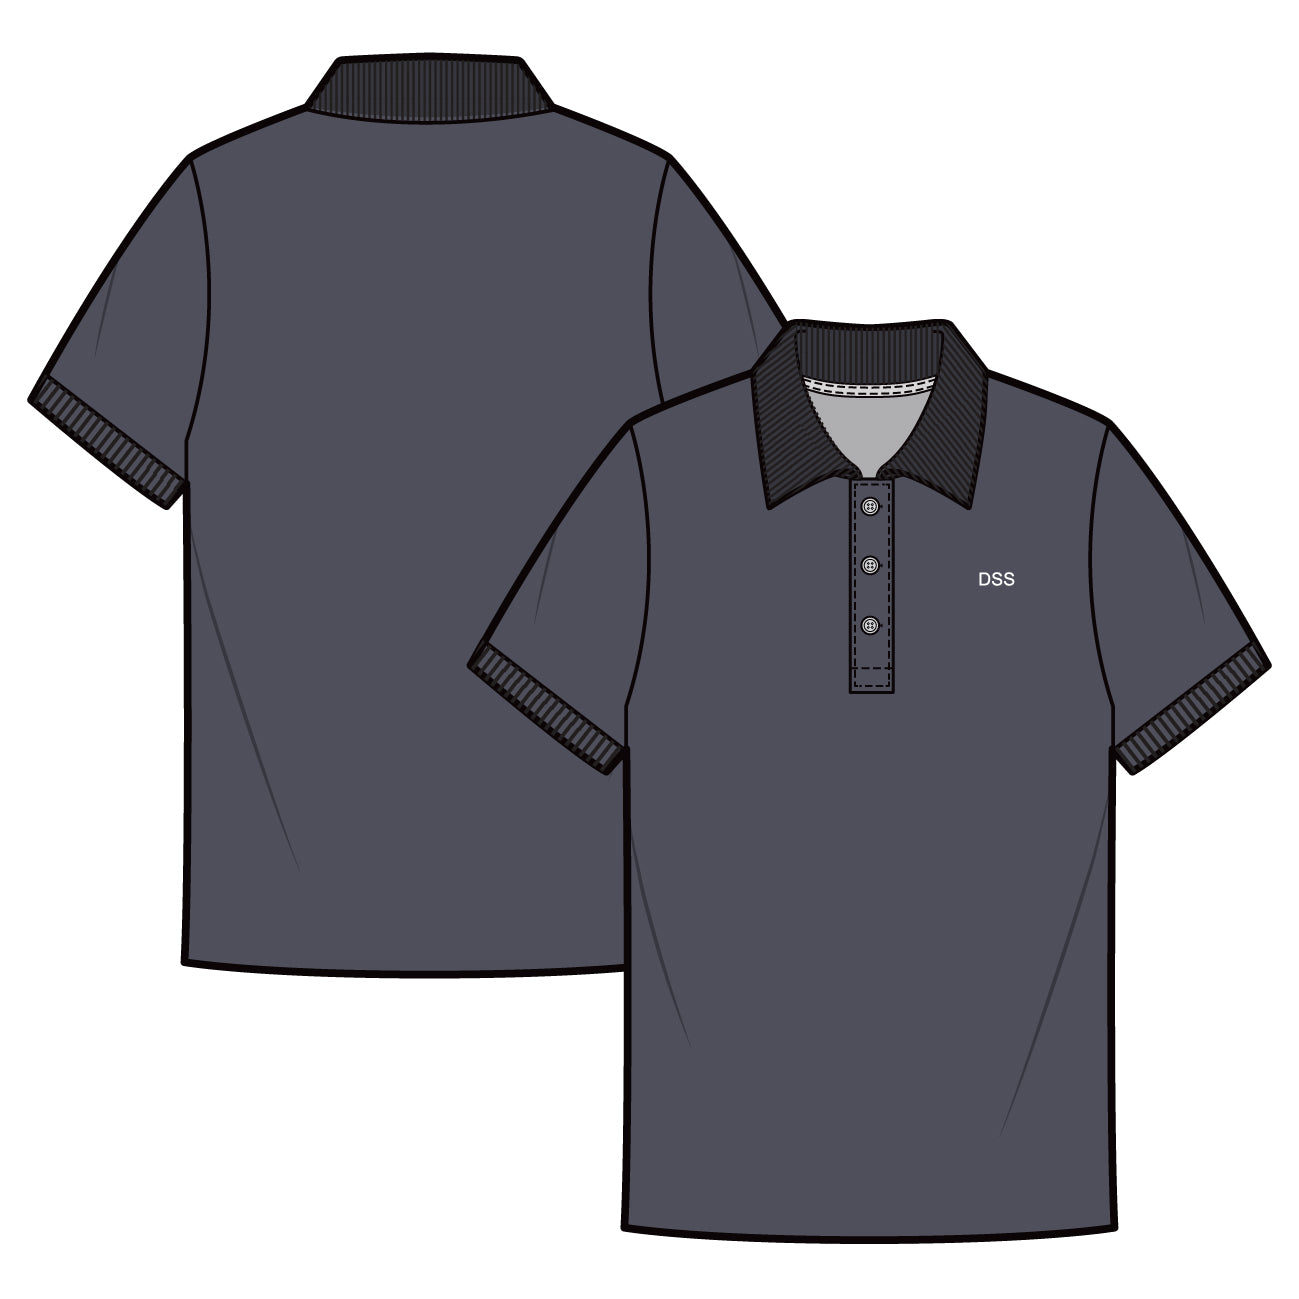 APSN Grey Dri-Fit Polo Shirt, Lead Programme